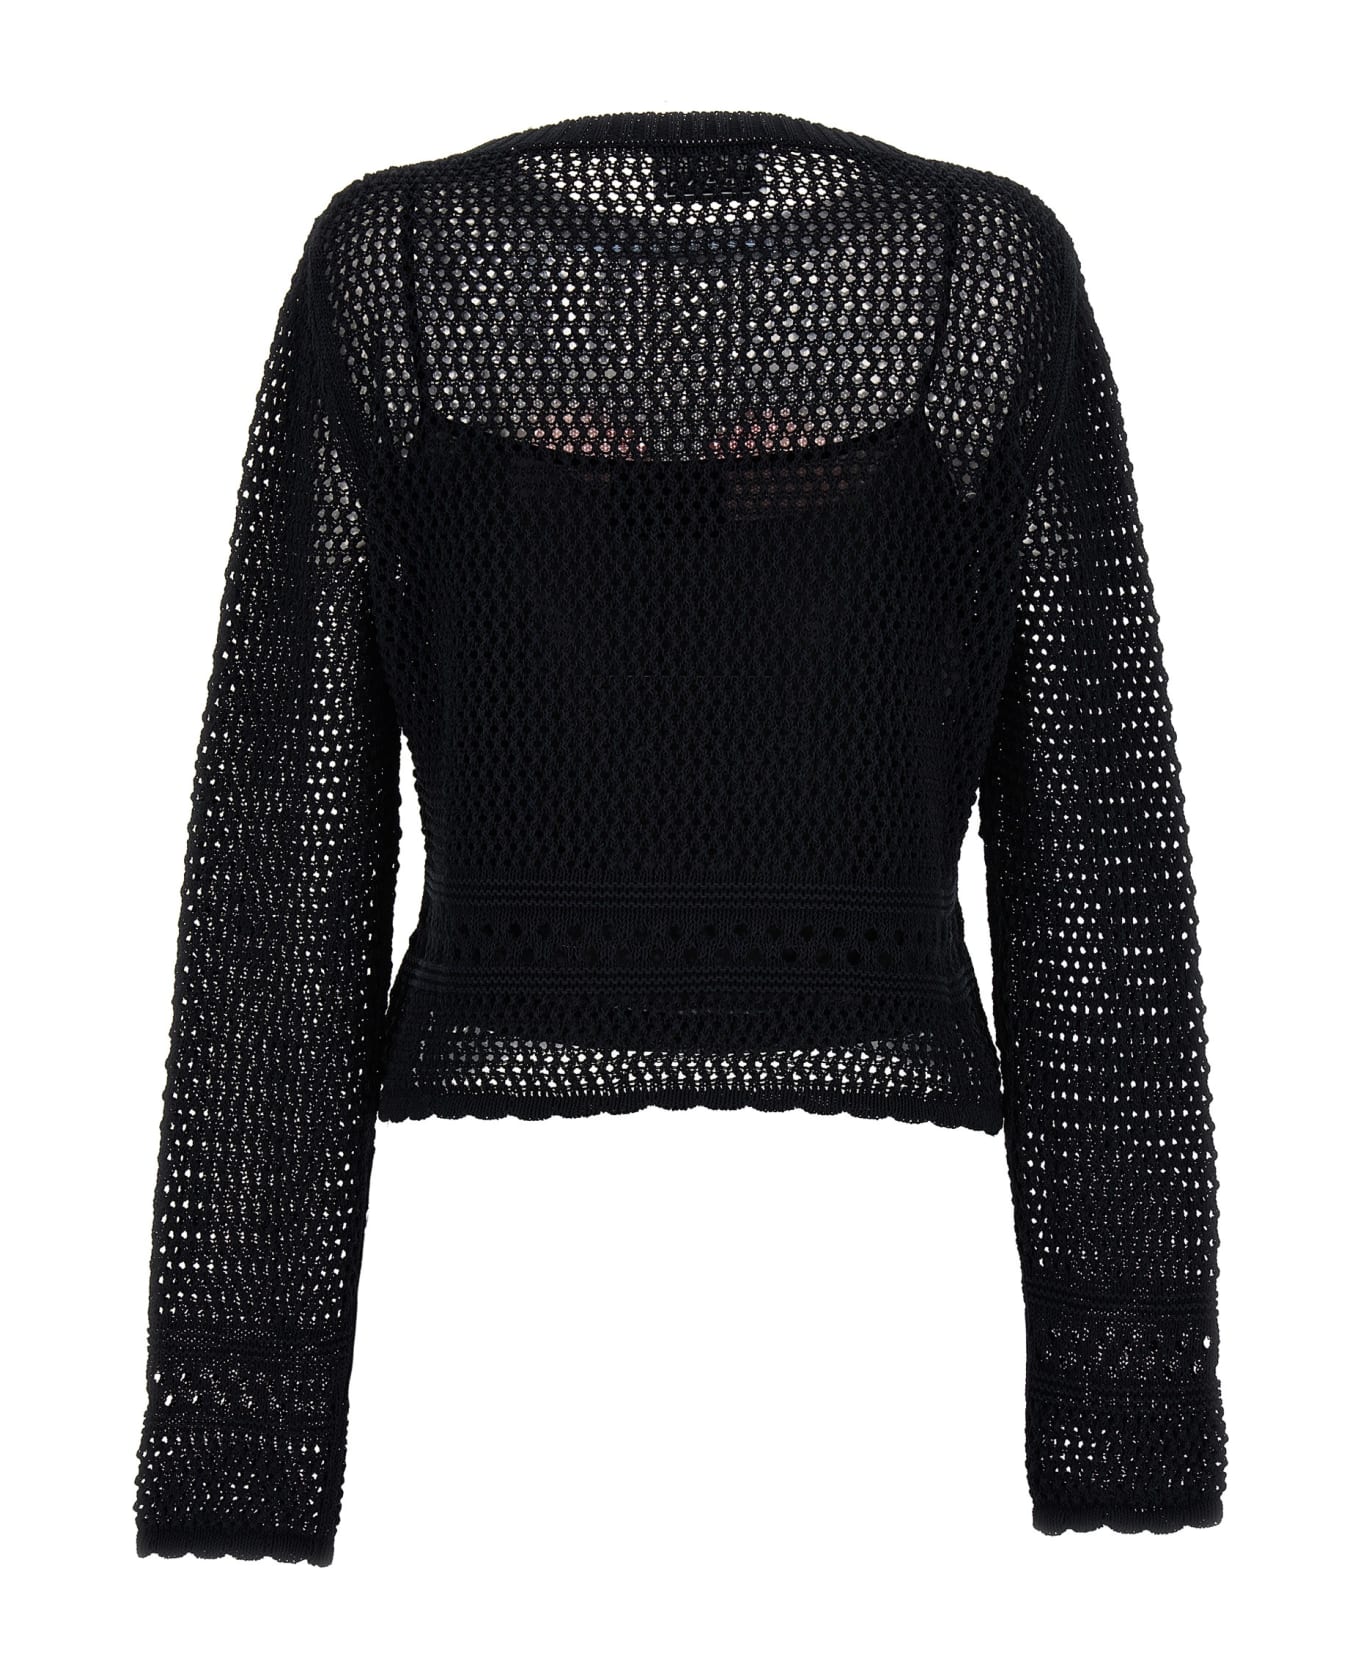 M05CH1N0 Jeans Crochet Sweater - Black  